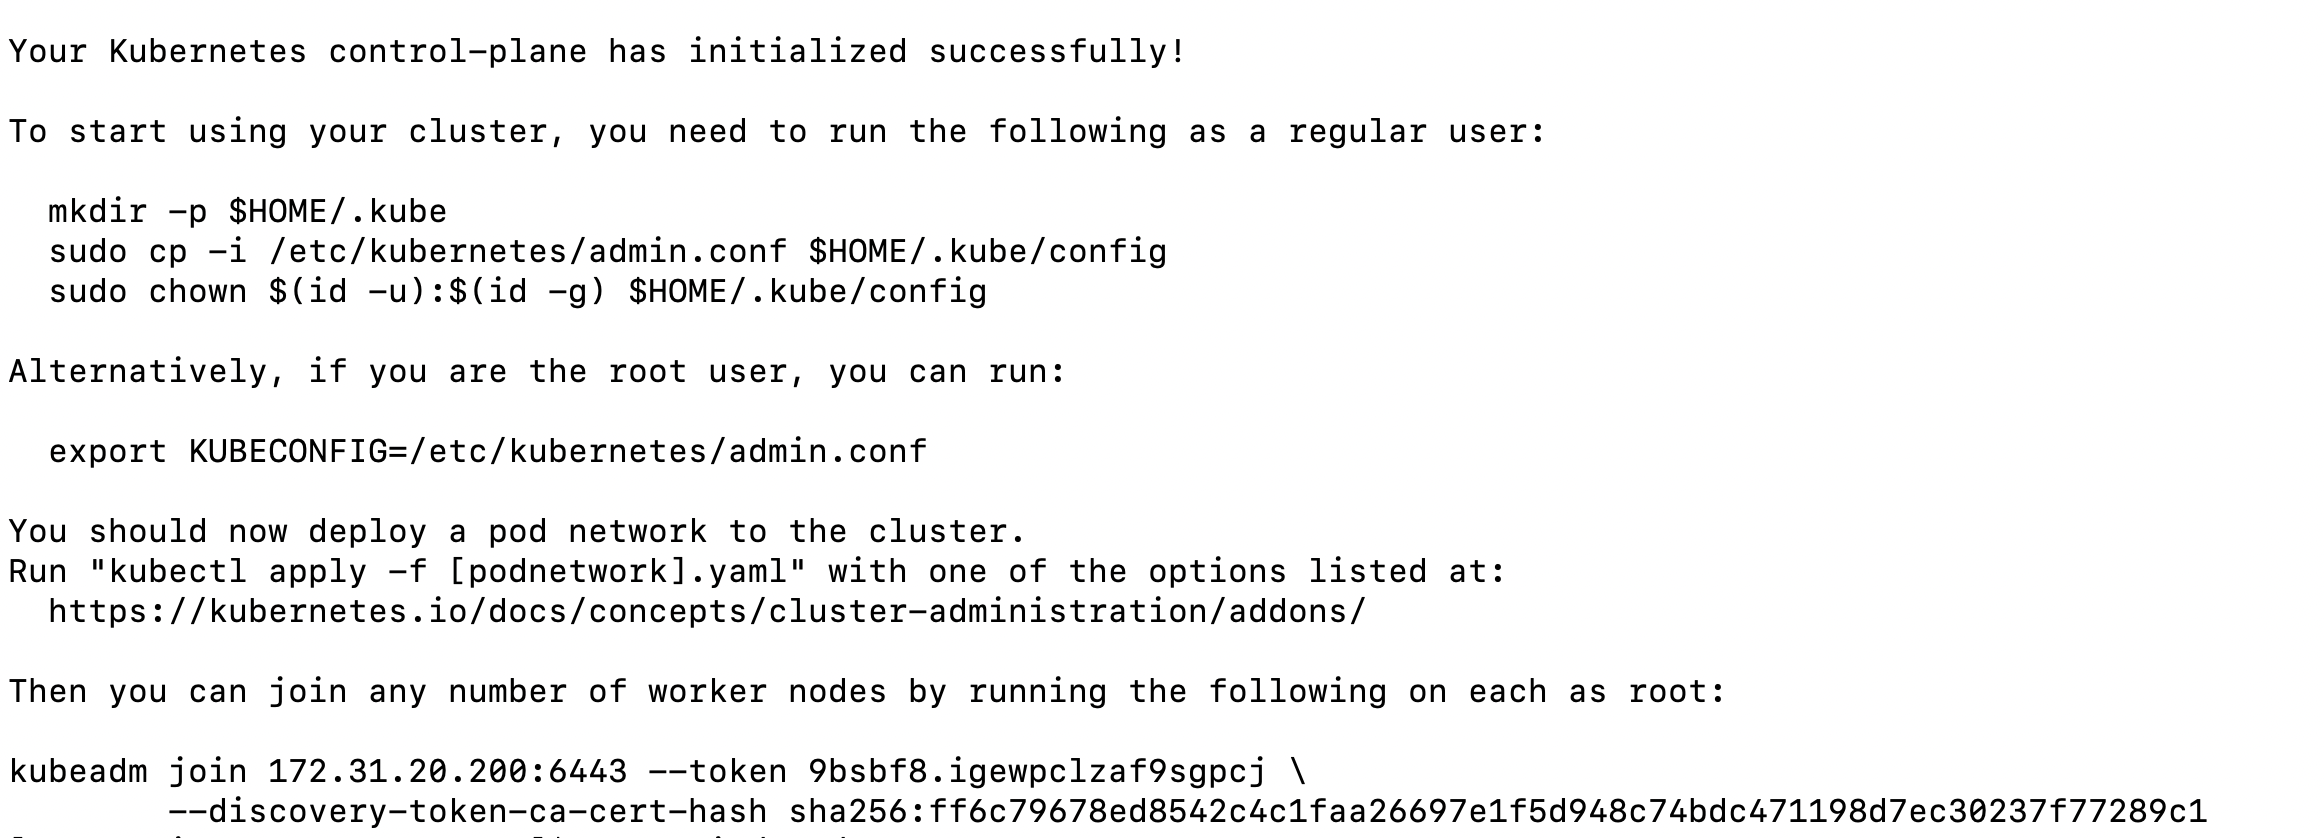 kubeadm output showing node joining instructions